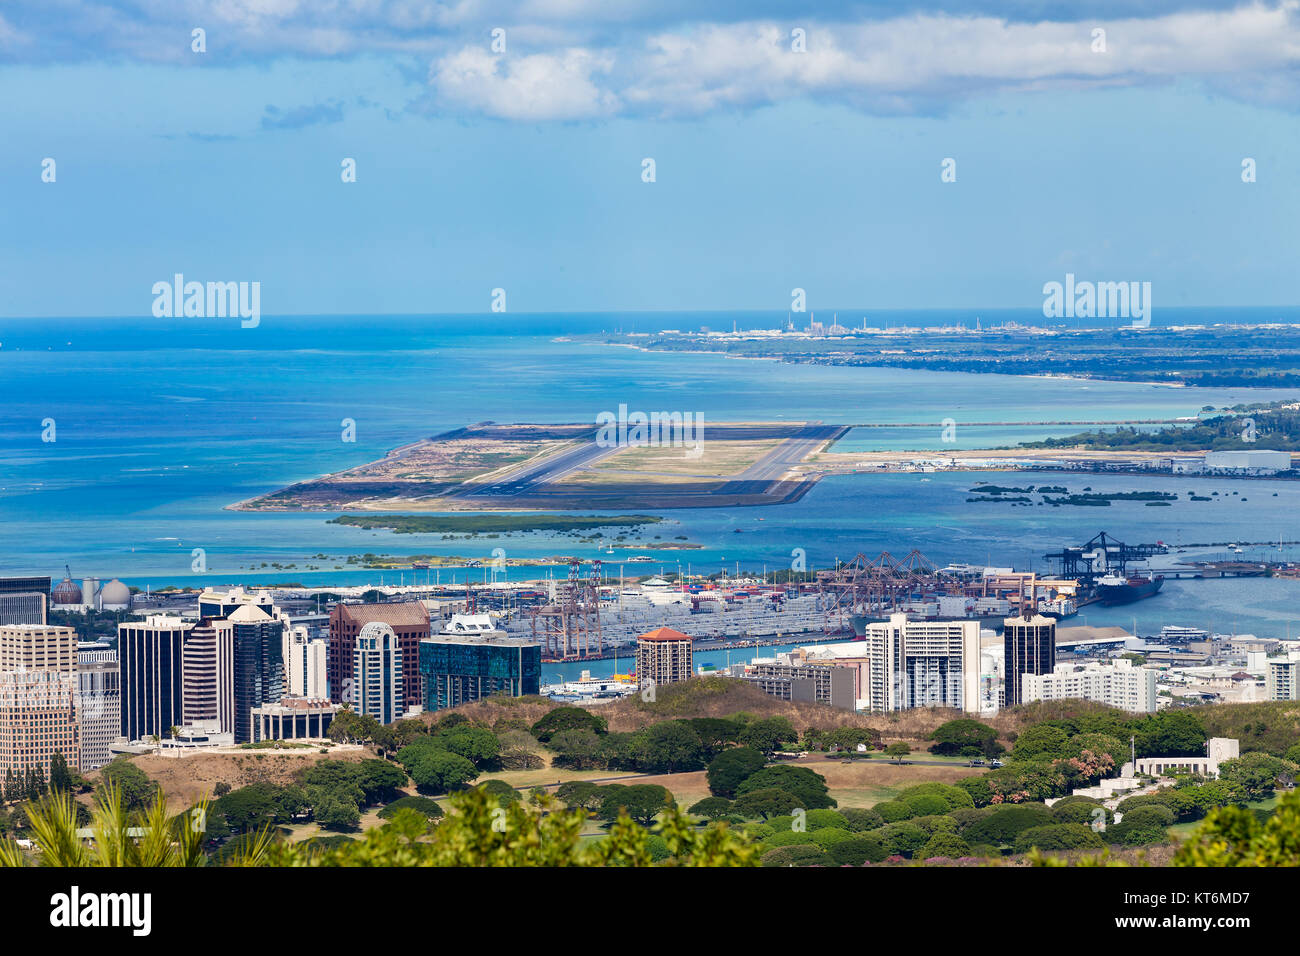 Portrait de l'Aéroport International Daniel K. Inouye, Oahu, Hawaï avec l'océan Pacifique derrière Banque D'Images